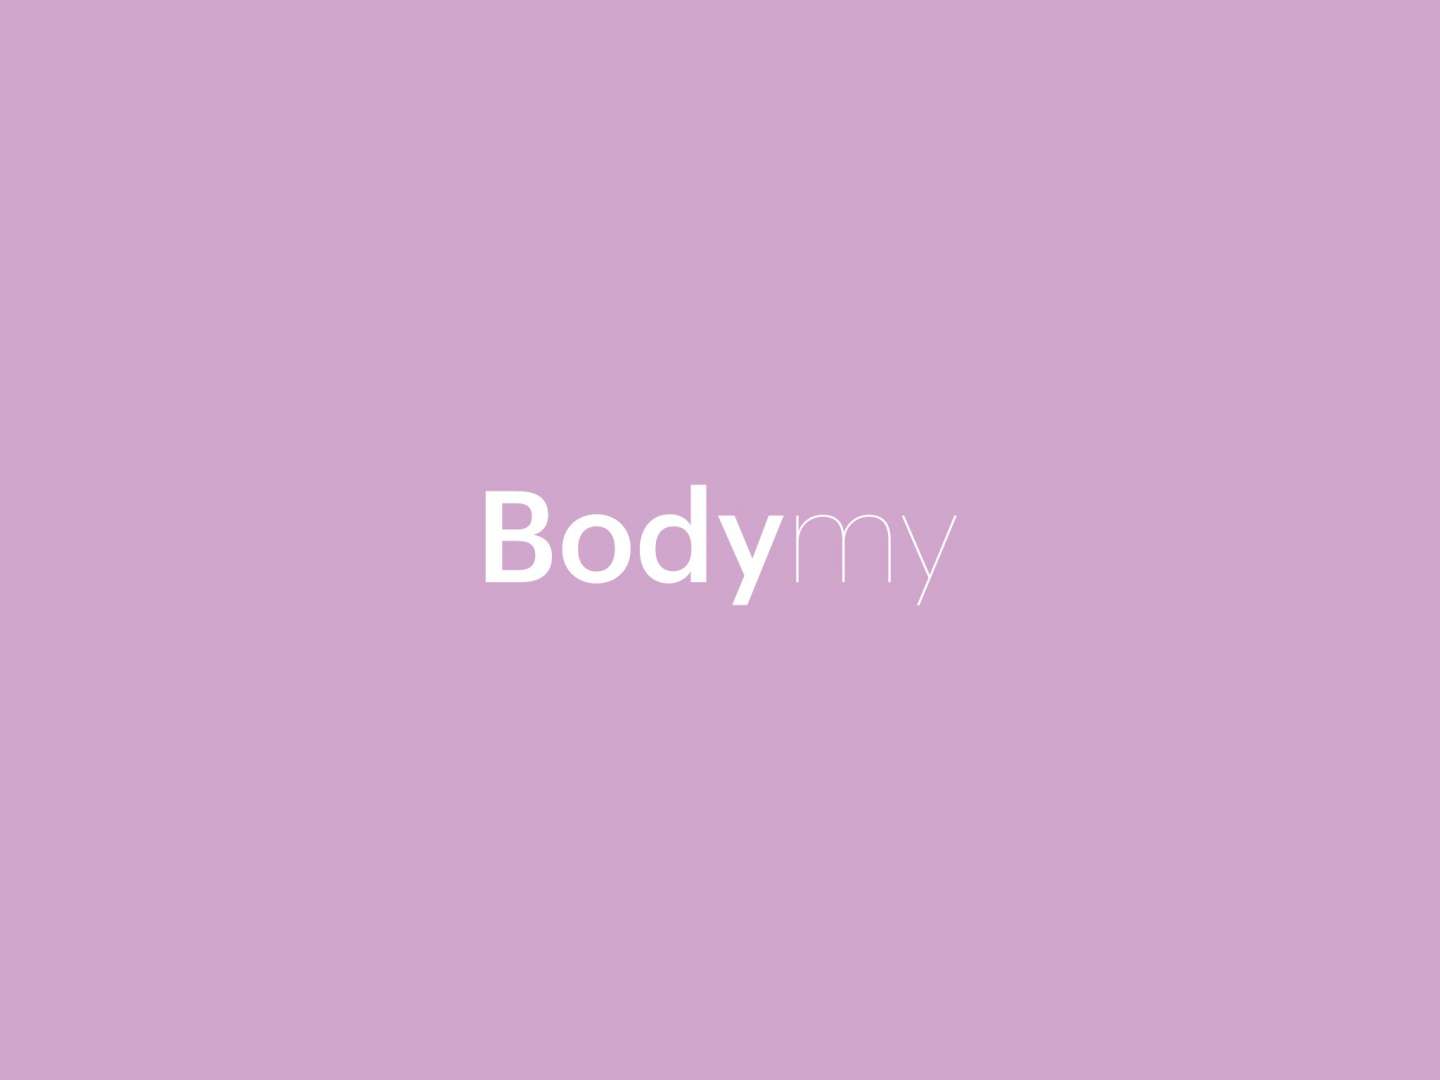 Bodymy